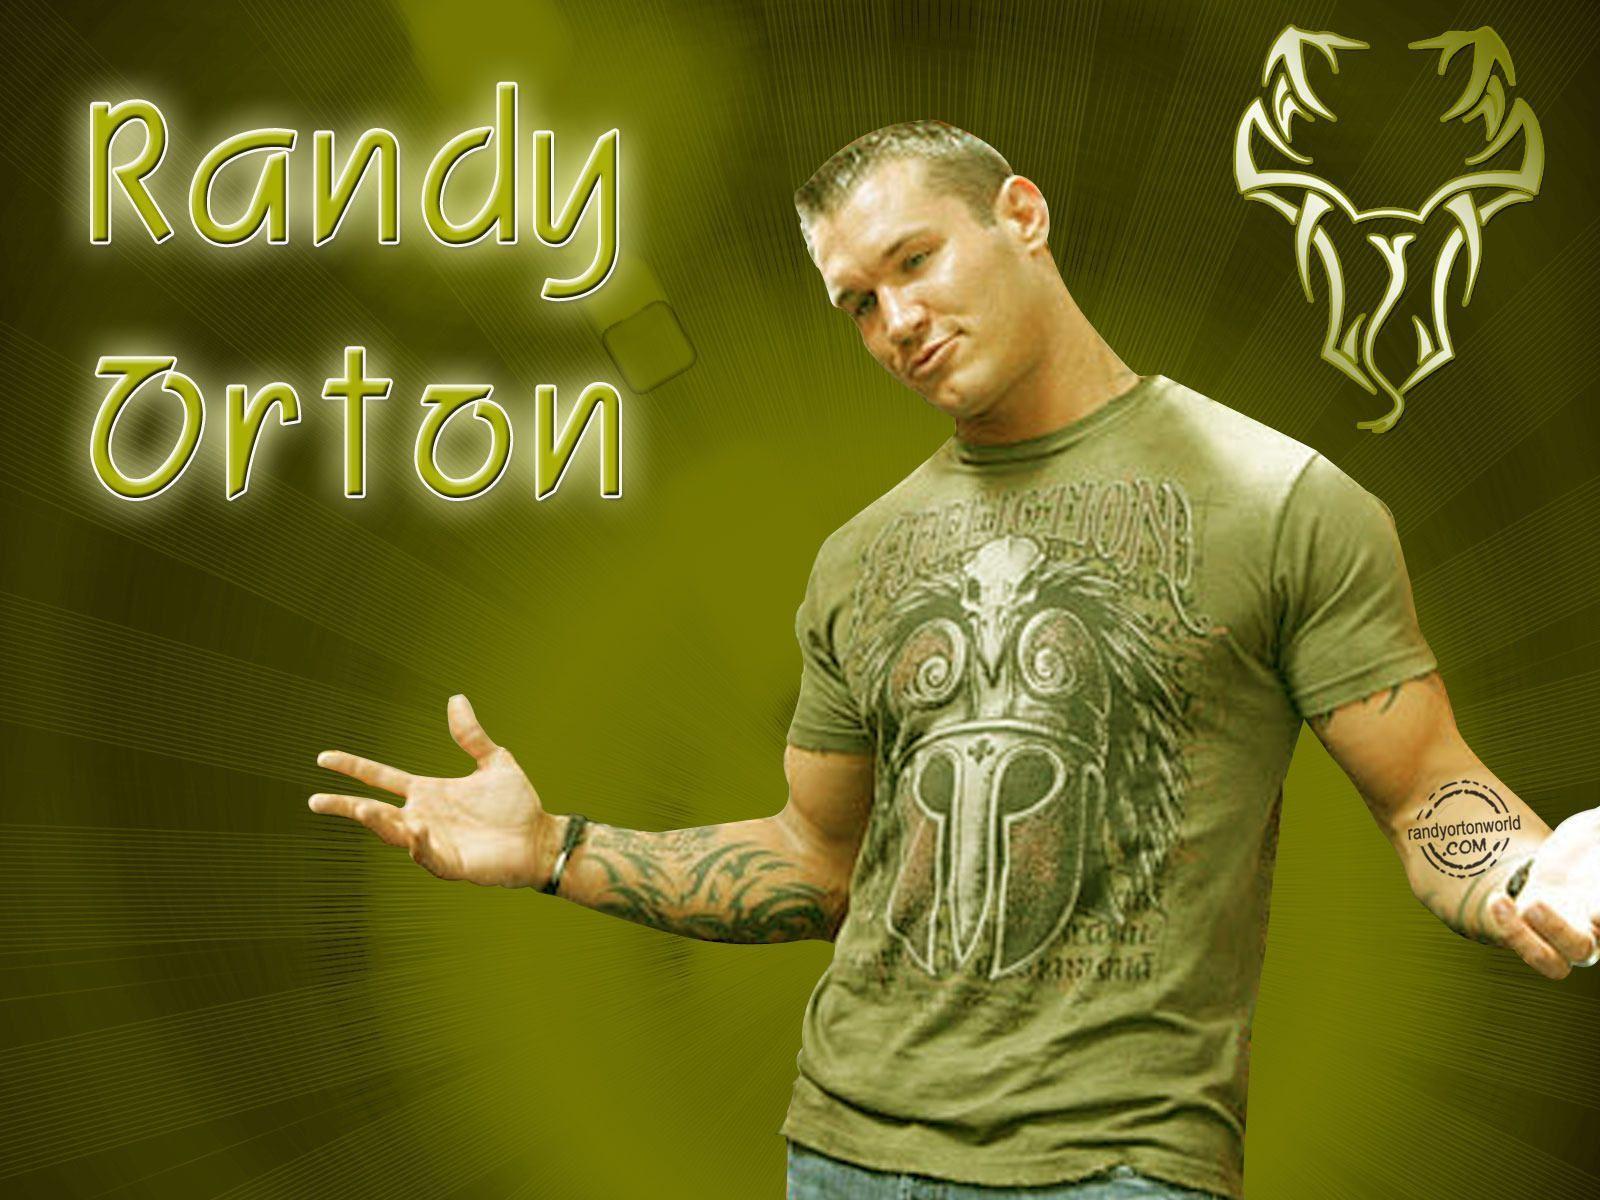 Cool Randy Orton Wallpaper. WWE Randy Orton